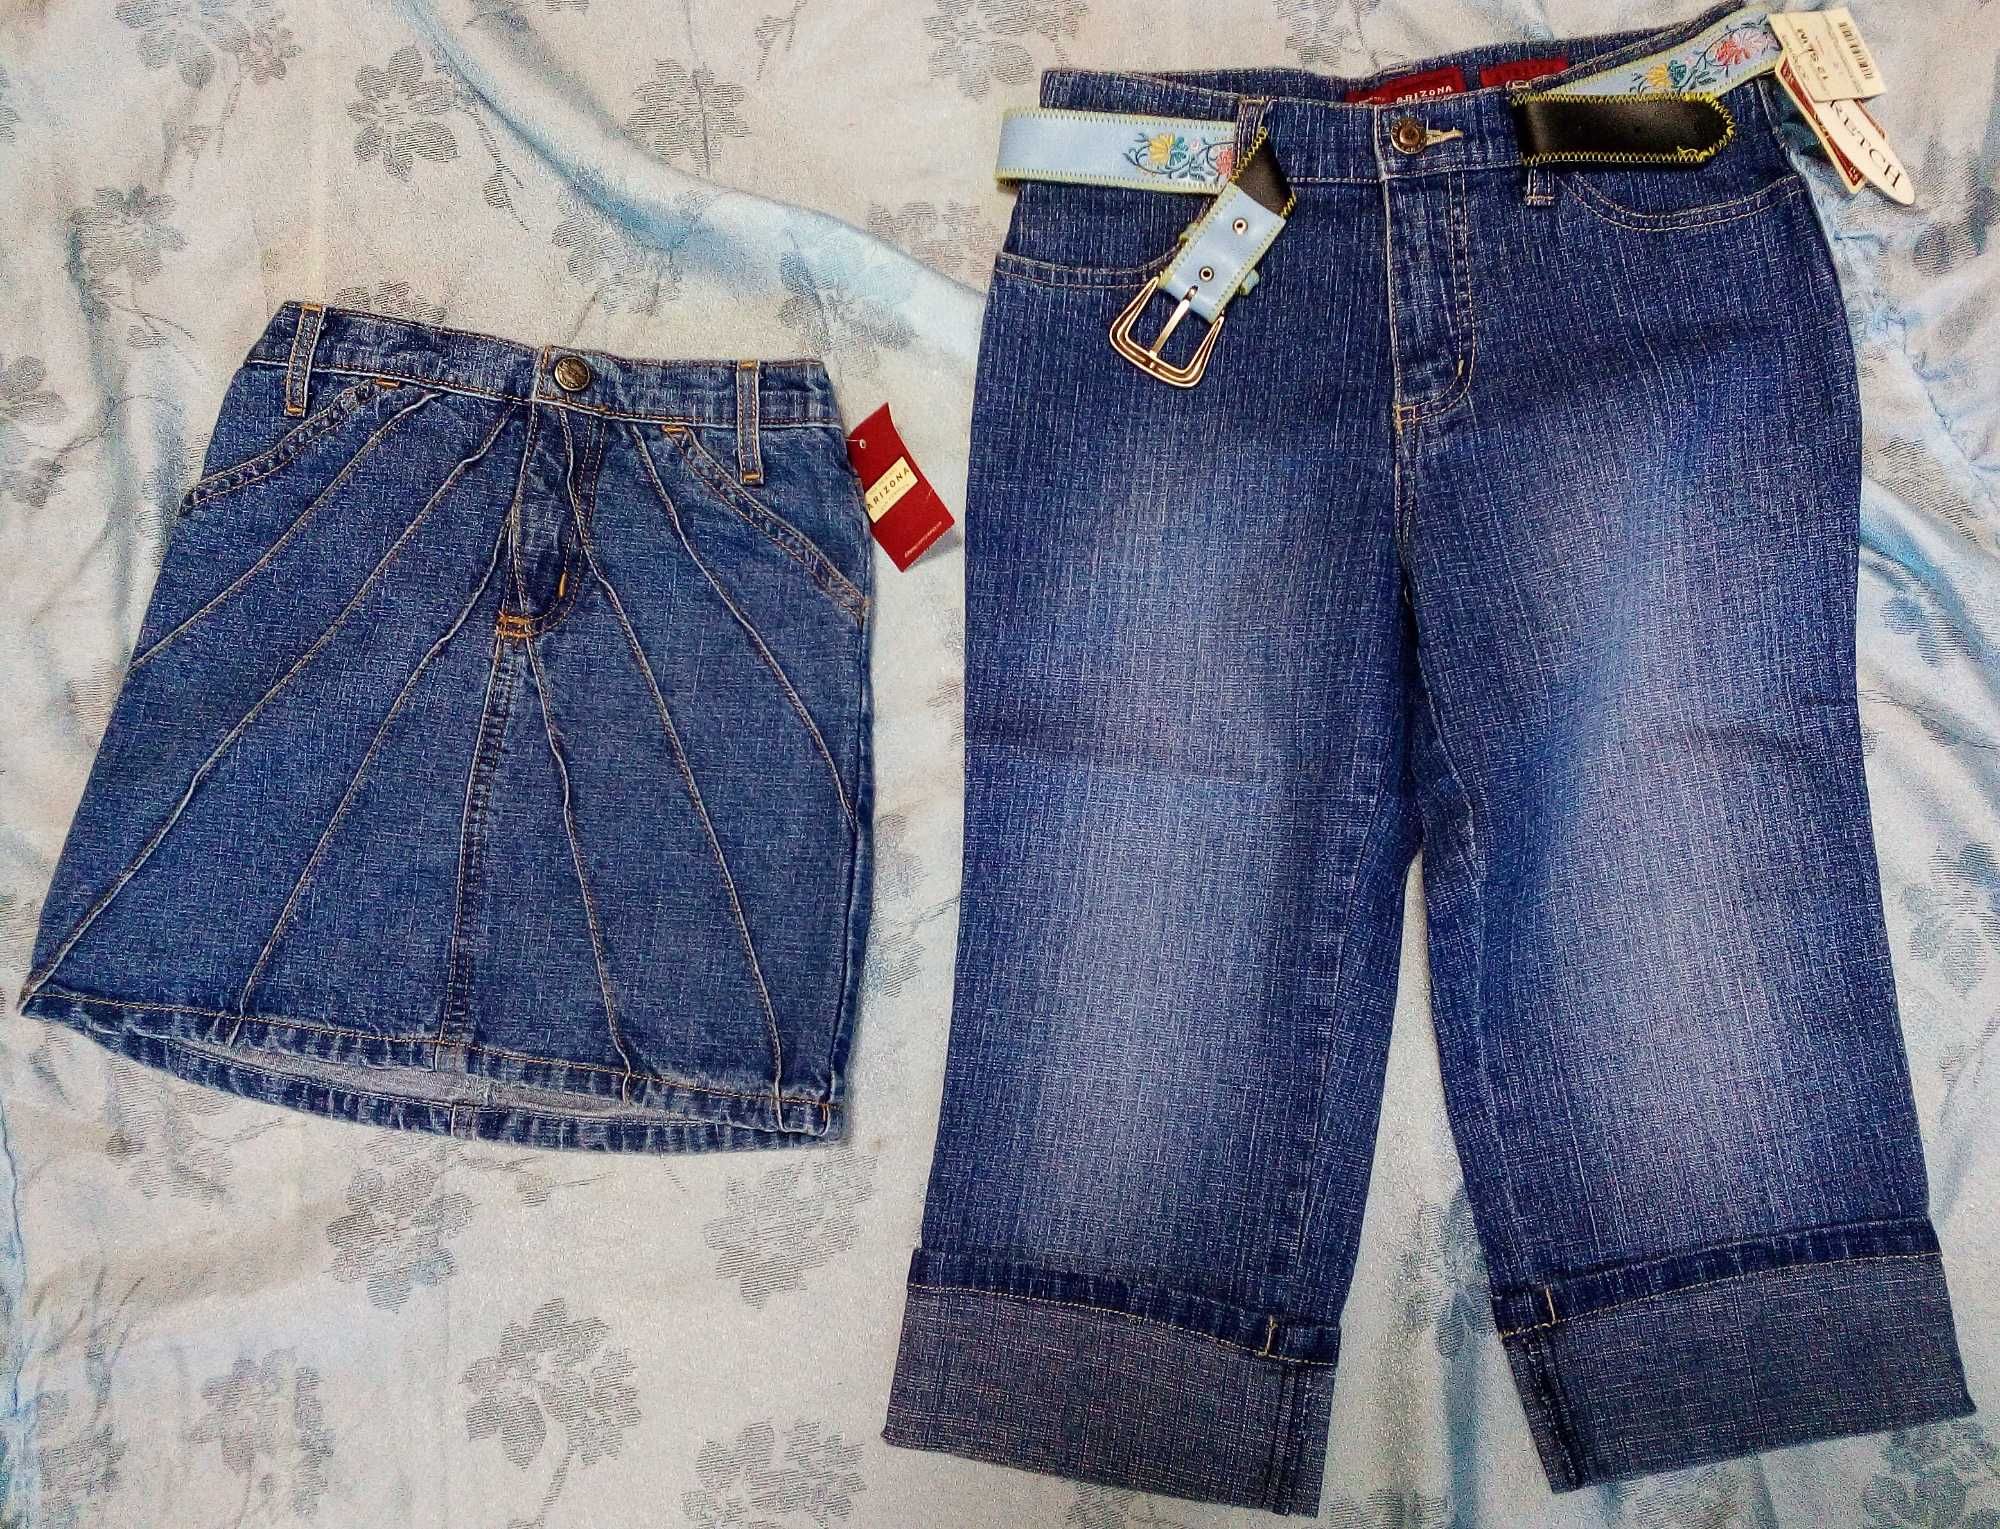 Новые джинсы капри для девочки 10-12 лет JCPenney(США)